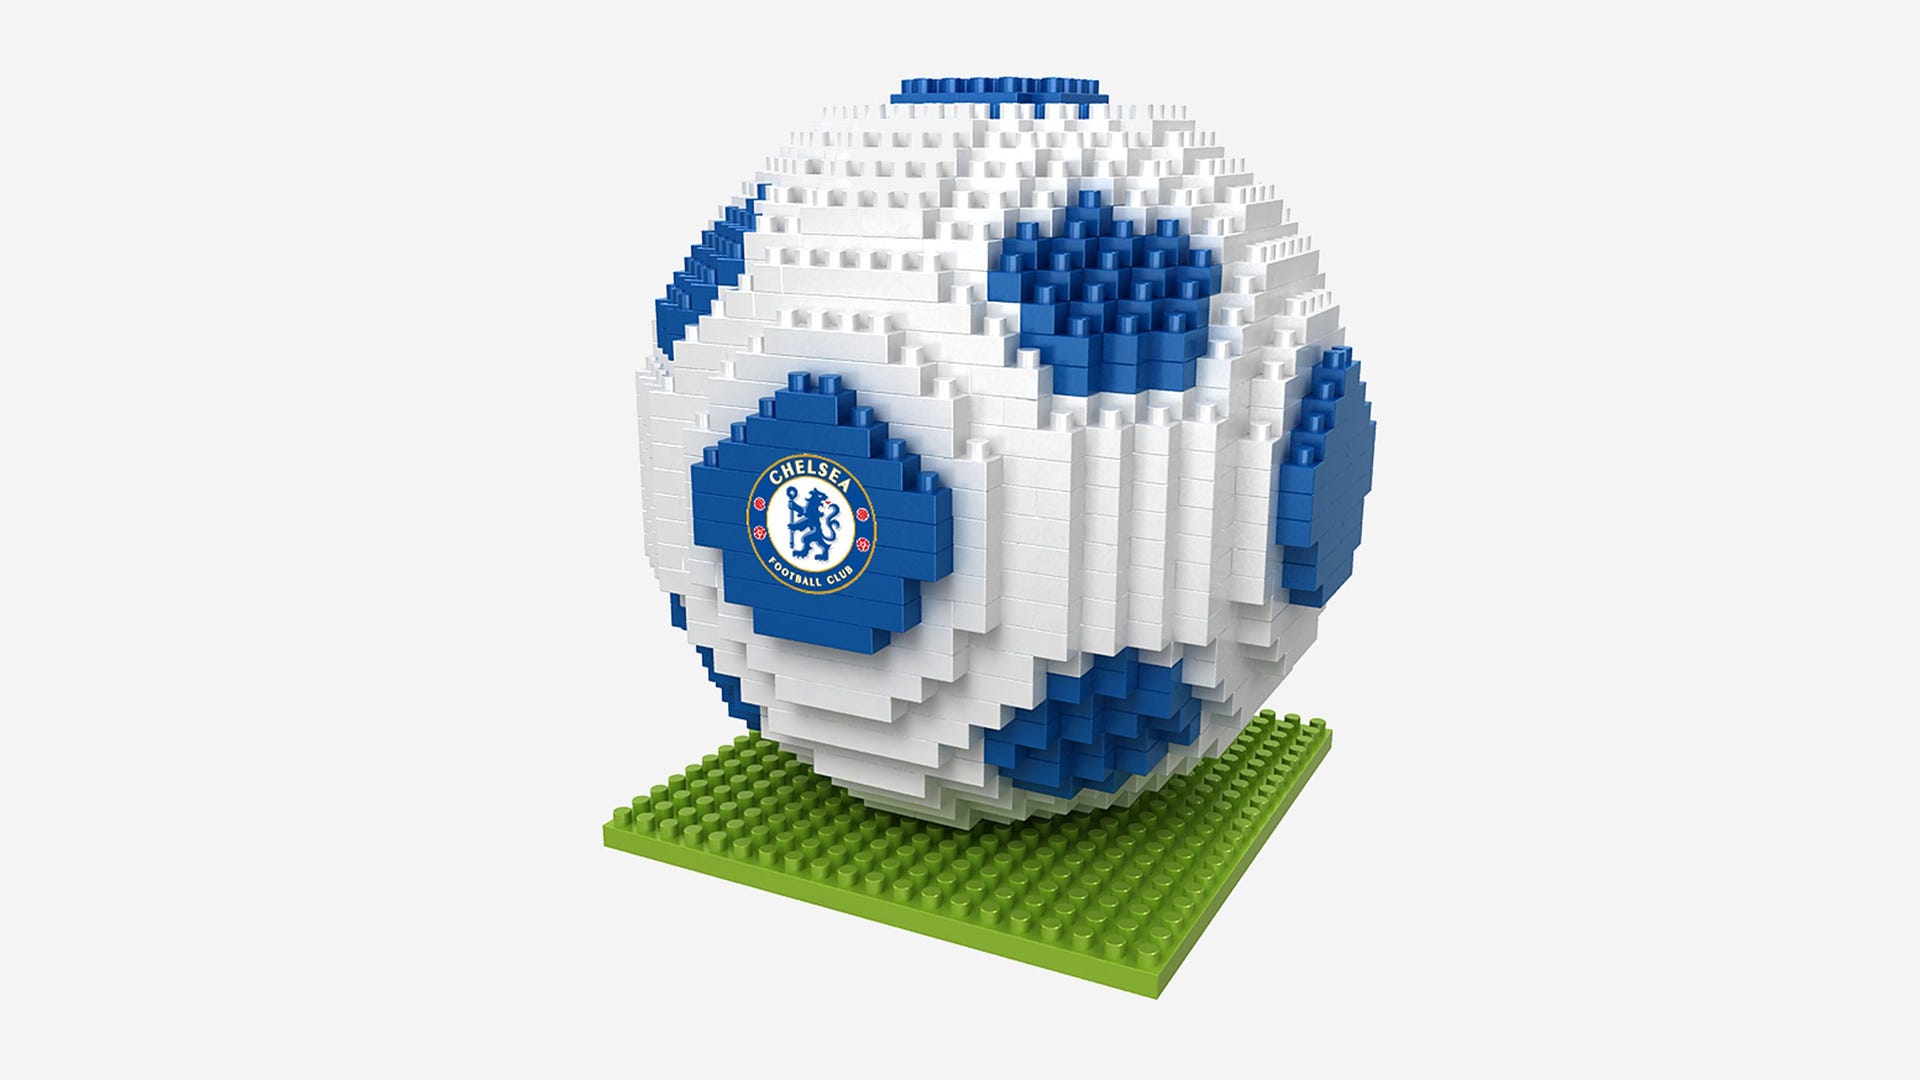 Officiel Chelsea Football Club Stadium Snow Dome cadeau idéal pour fan